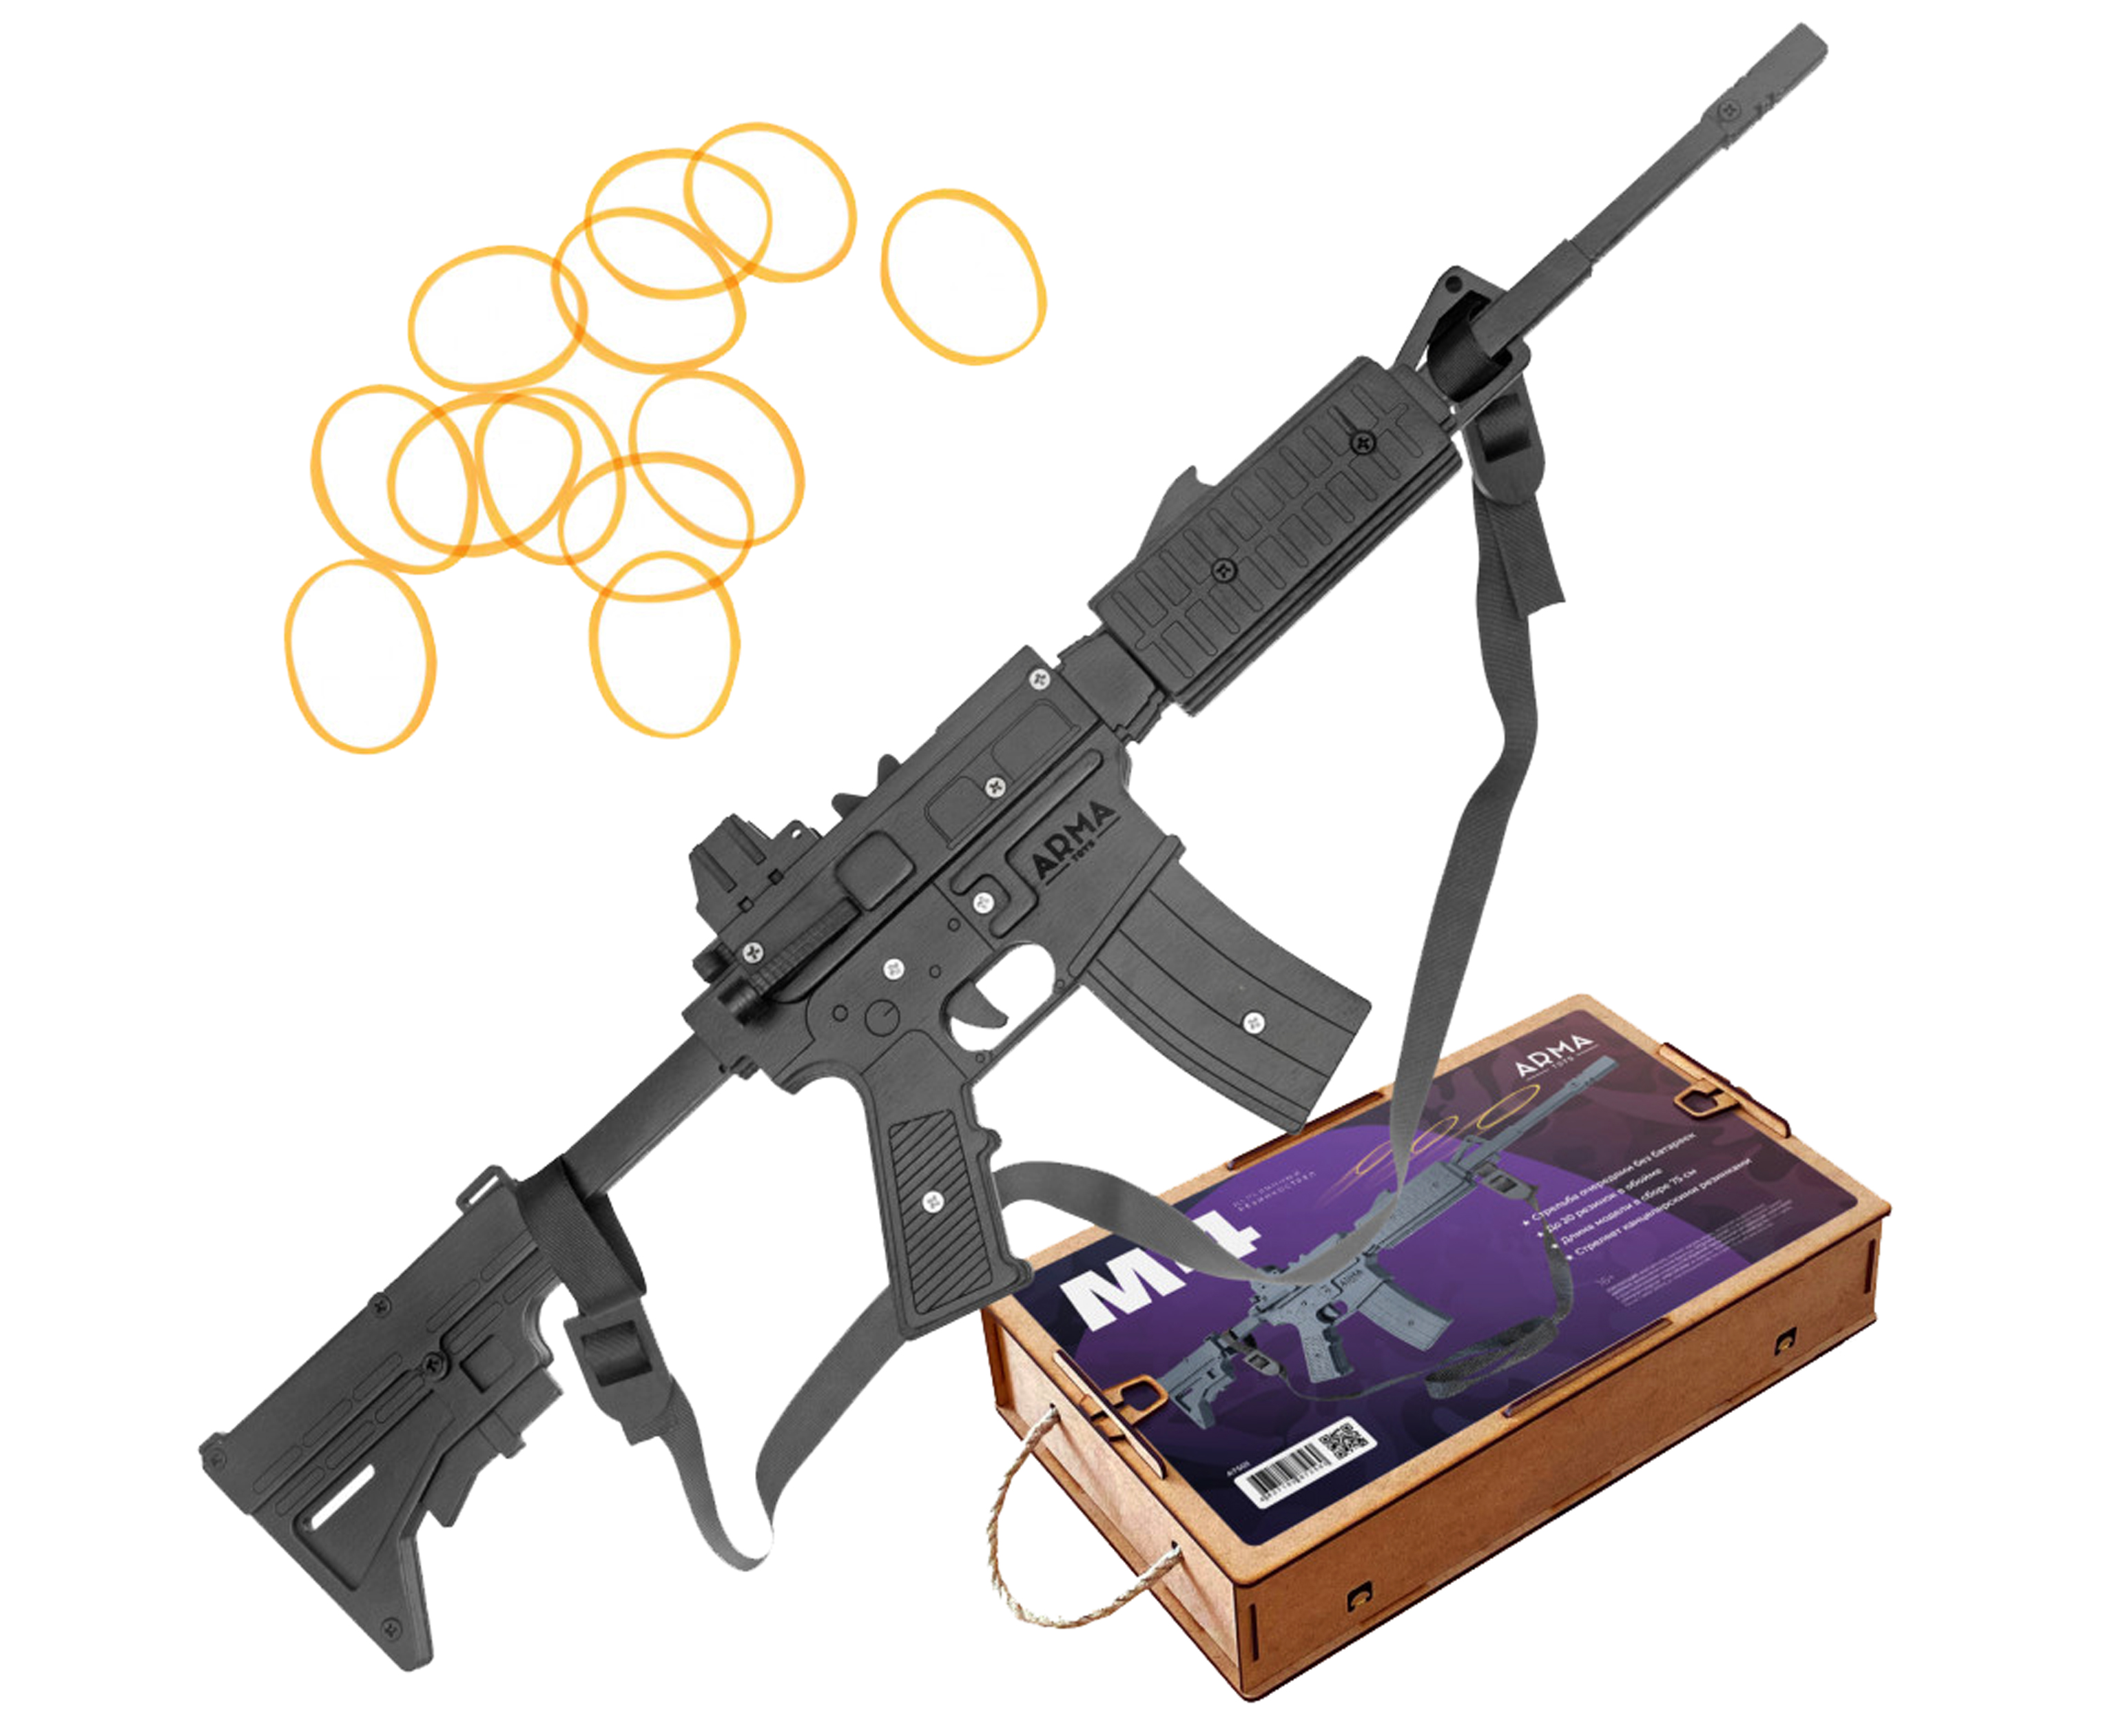 Резинкострел игрушечный Arma toys винтовка M4 макет, AR-15, AT501 резинкострел arma toys автомат ак 47 макет калашников at006color